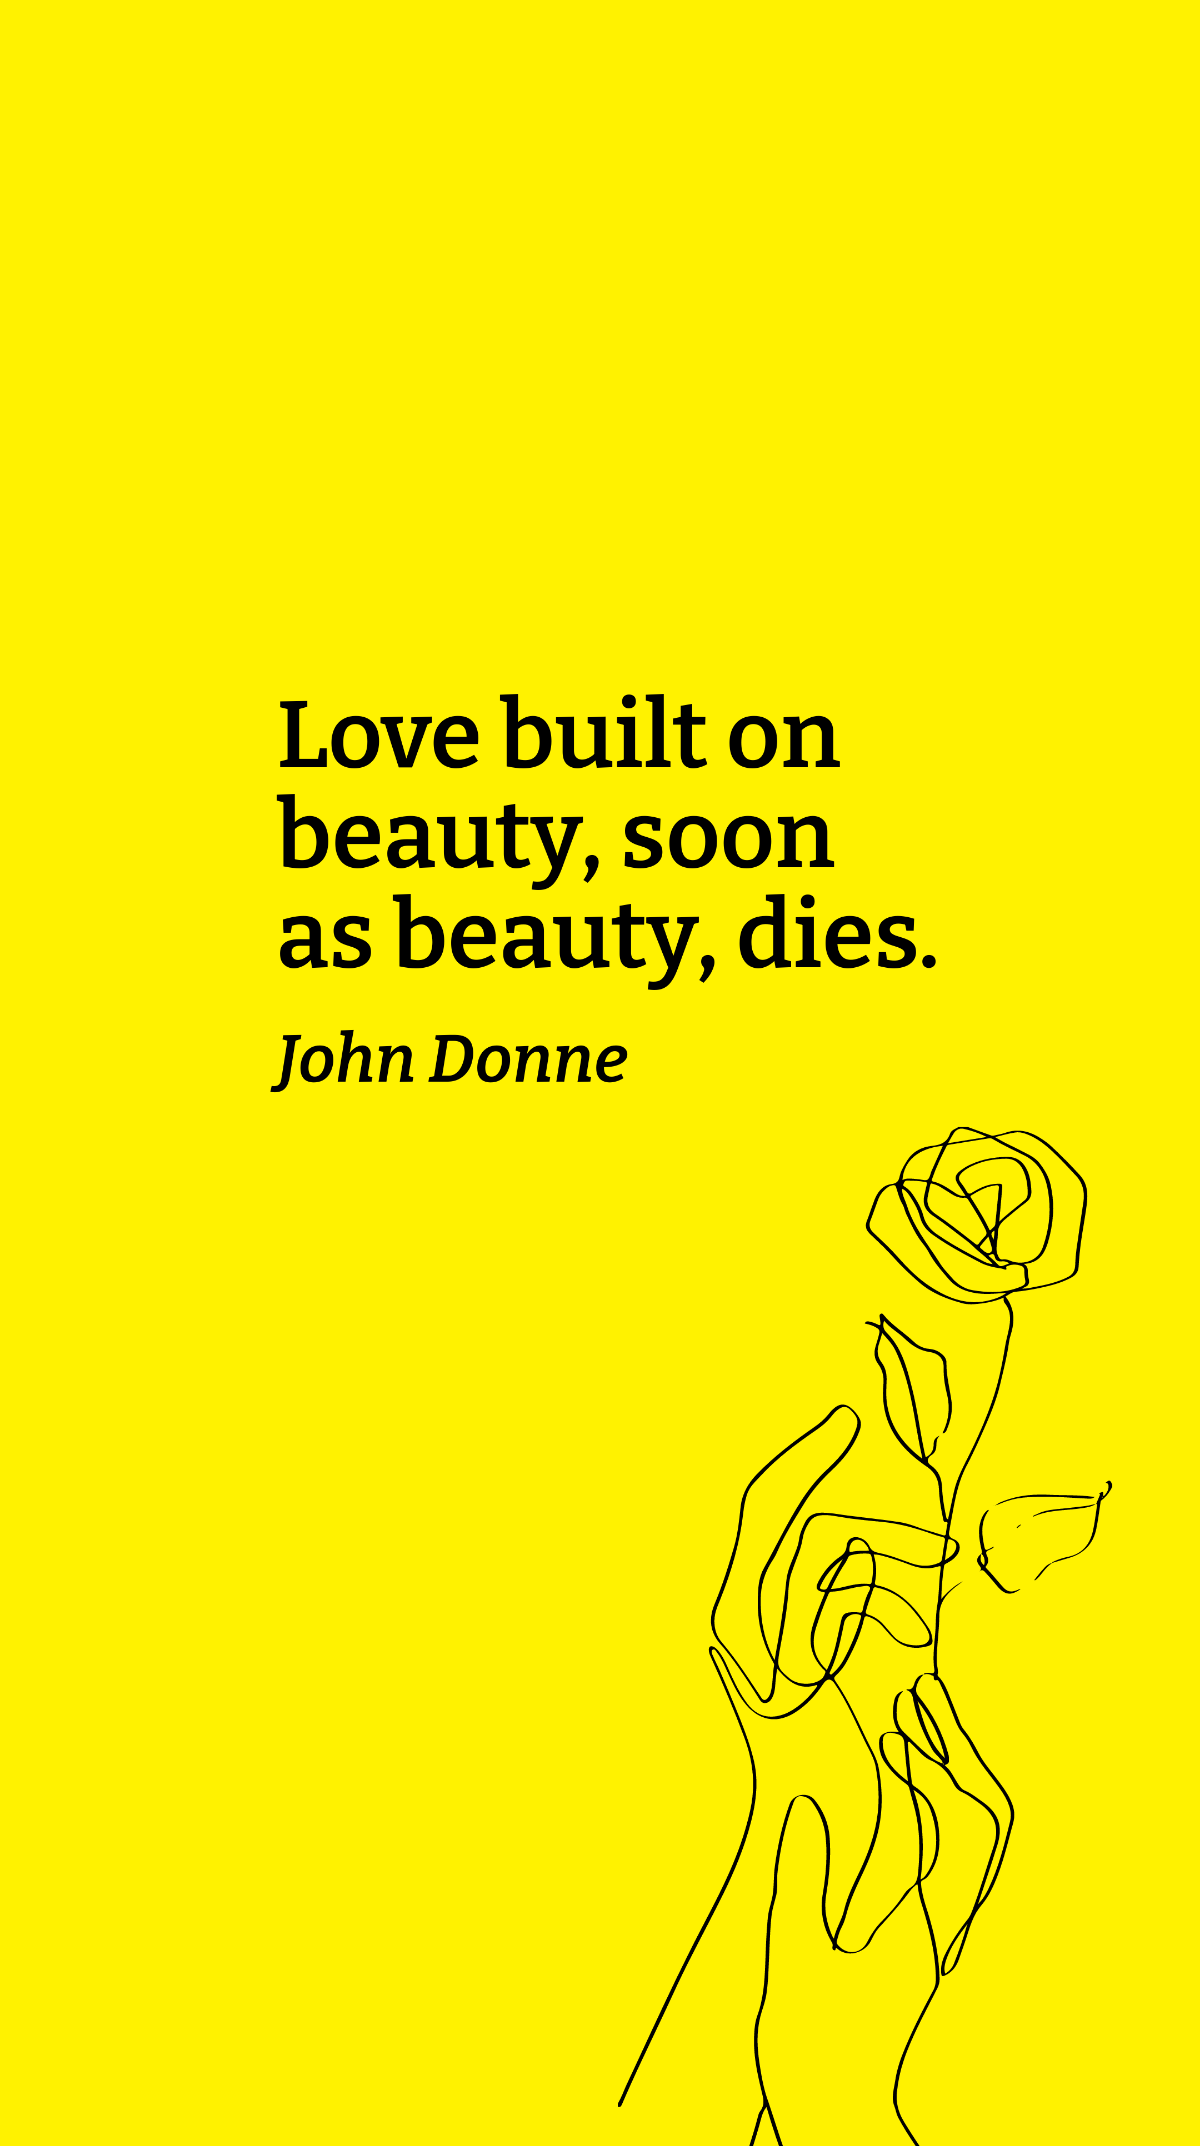 Free John Donne - Love built on beauty, soon as beauty, dies. Template